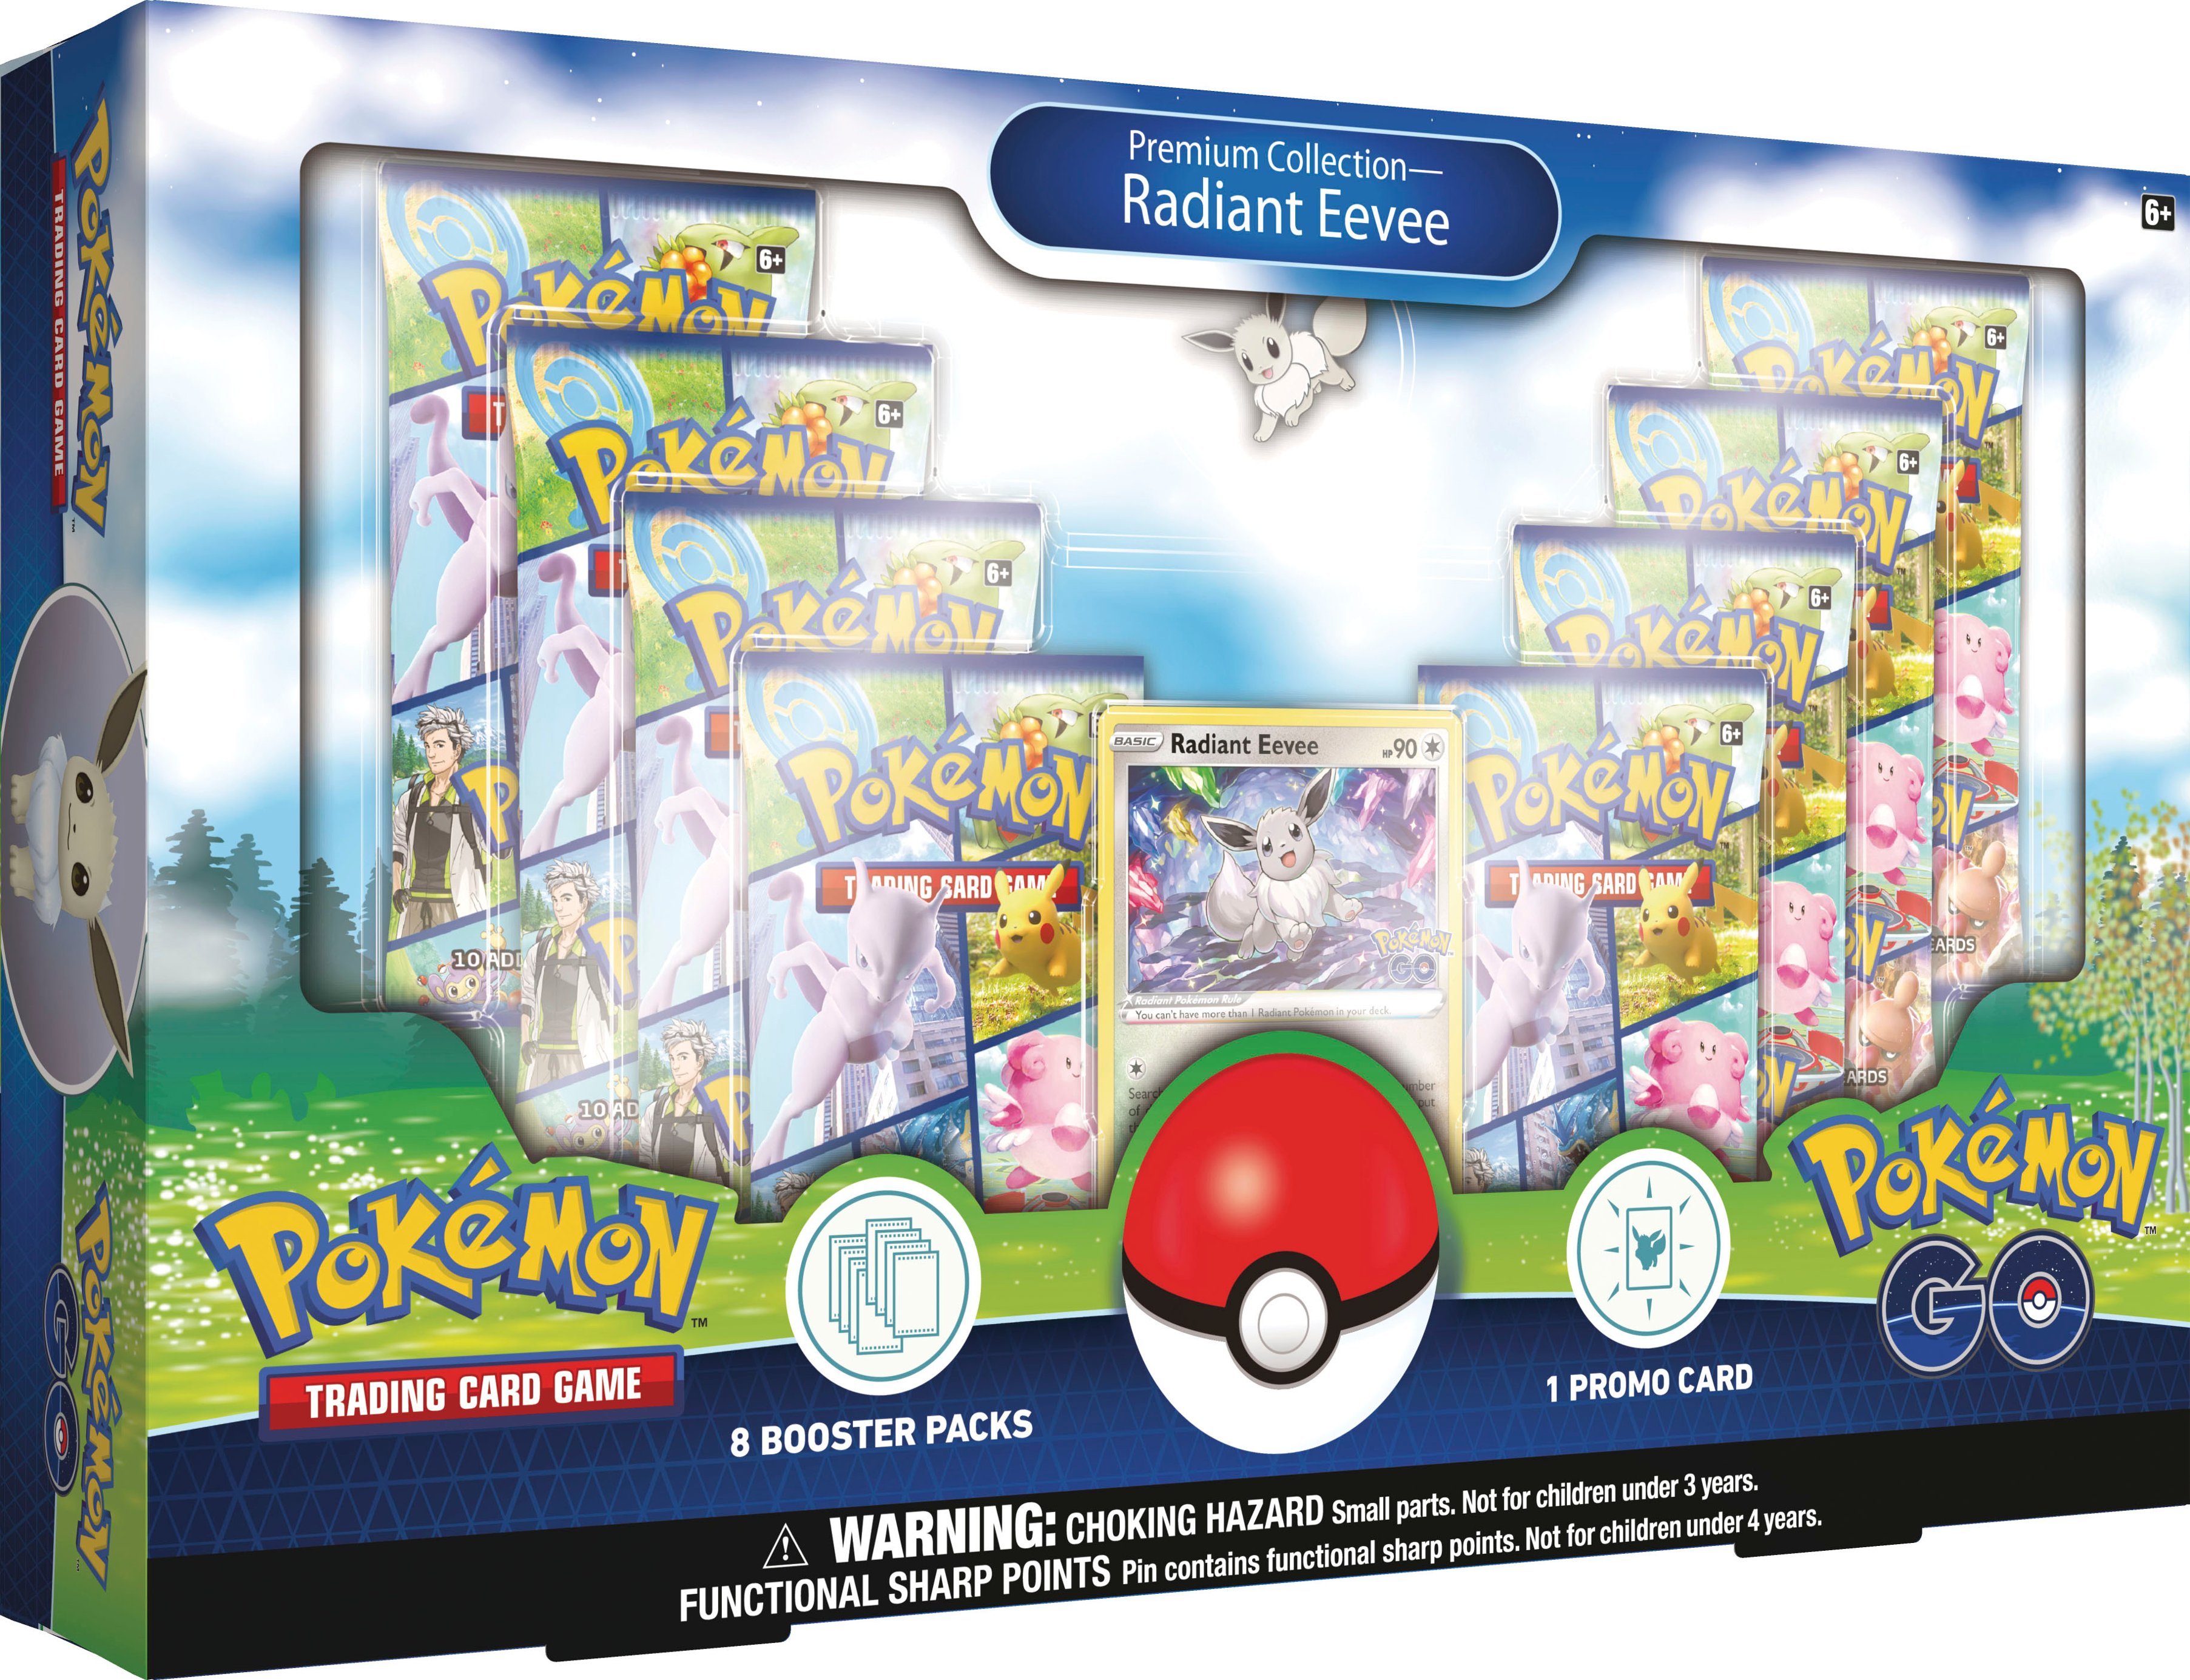 Pokémon Trading Card Pokemon GO Premium Collection Radiant Eevee 87052 - Buy